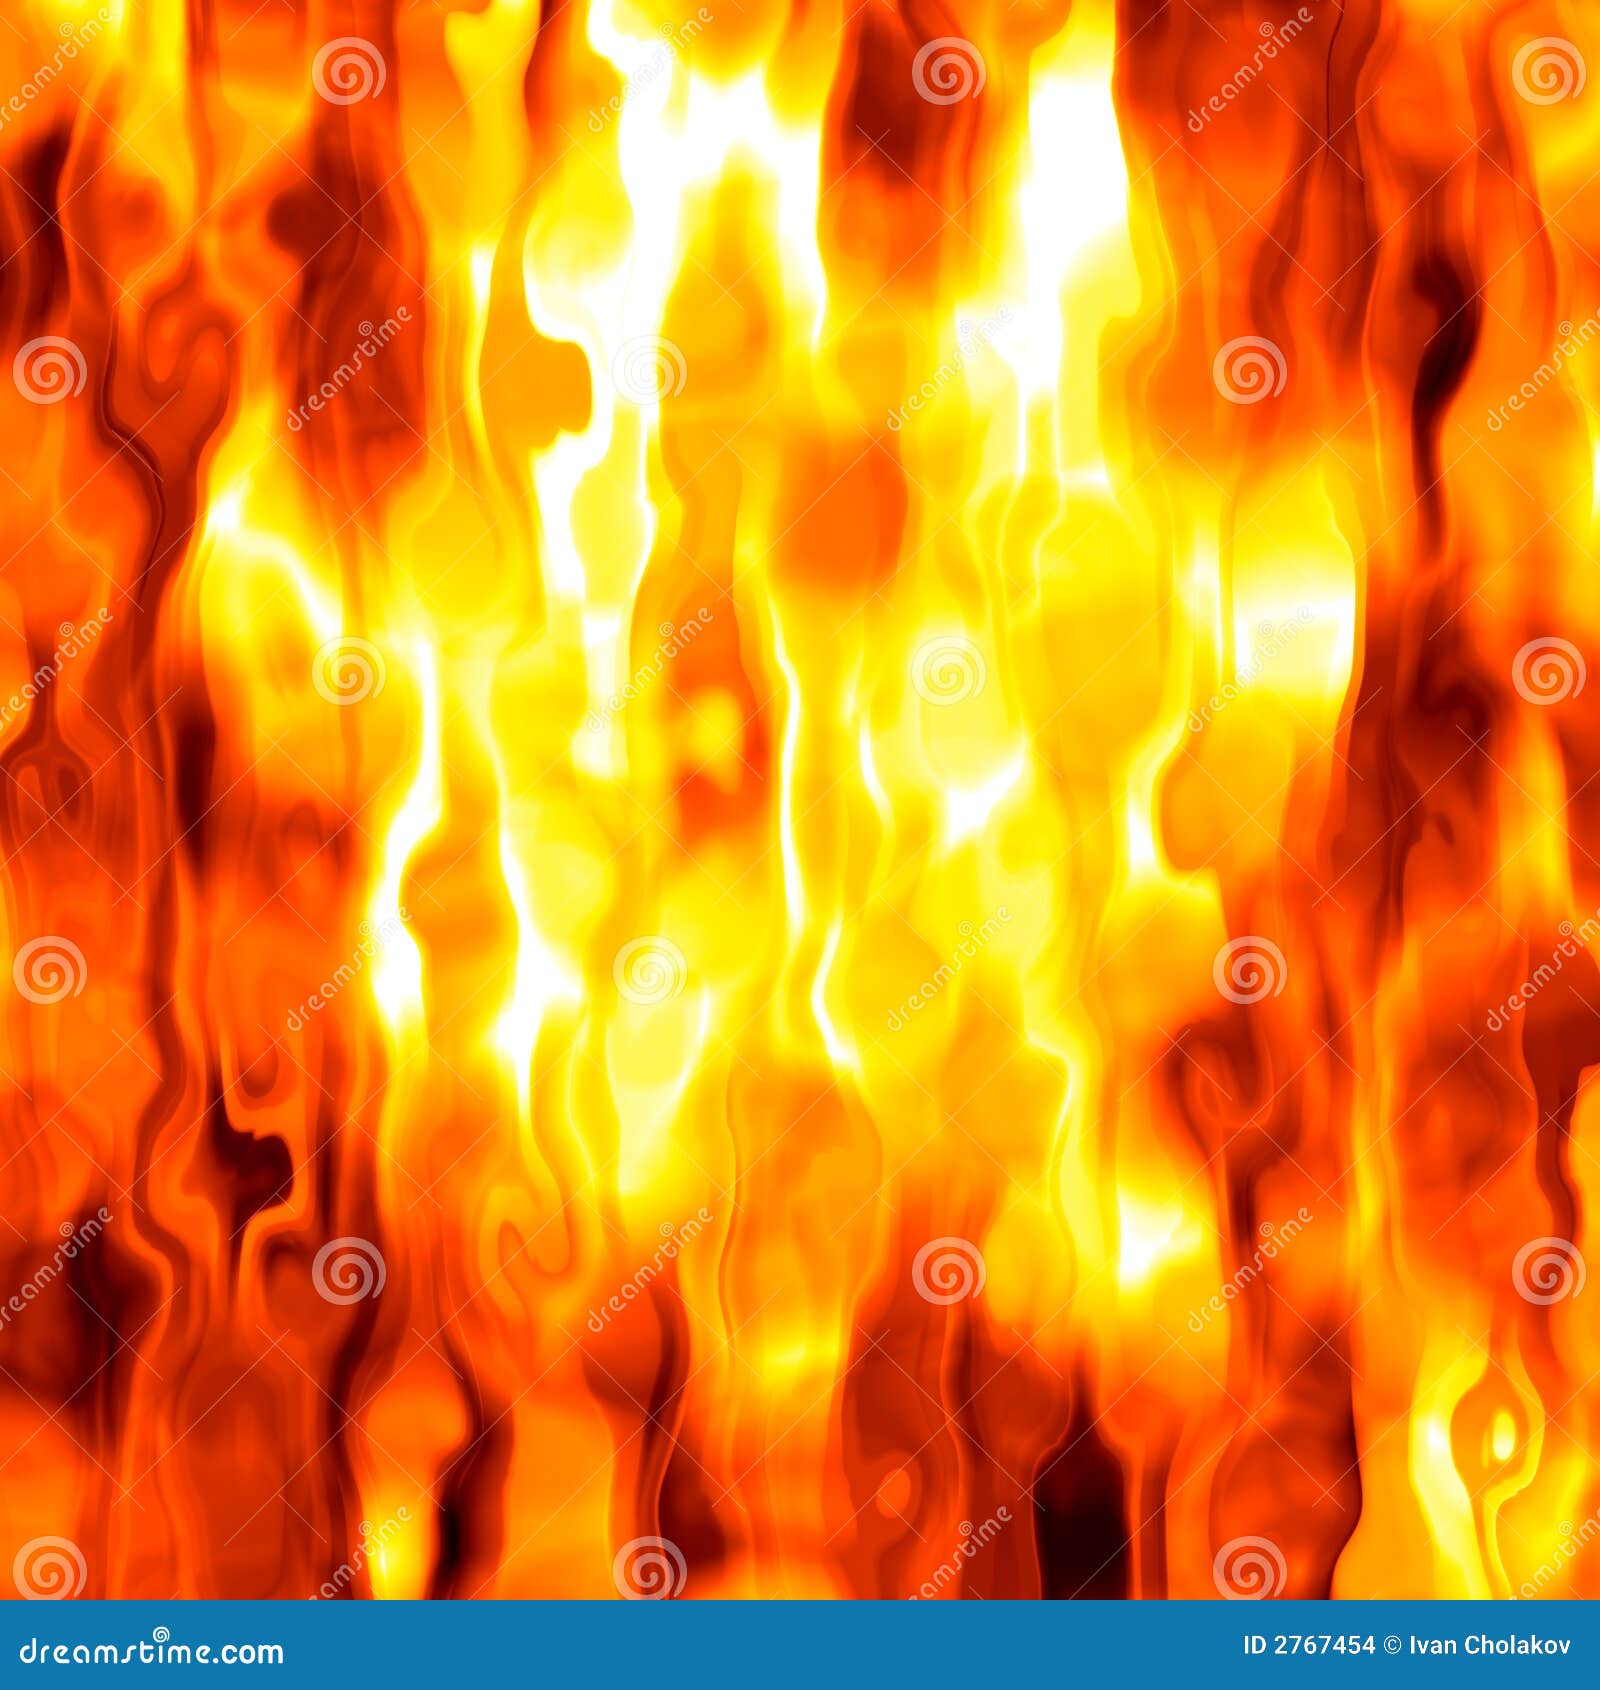 Hình nền lửa đỏ cháy nóng là một sự lựa chọn hoàn hảo cho những ai muốn đem lại sự táo bạo và năng động cho bức ảnh của mình. Hãy xem hình ảnh liên quan để cảm nhận được sức nóng và sự cuốn hút của nó.